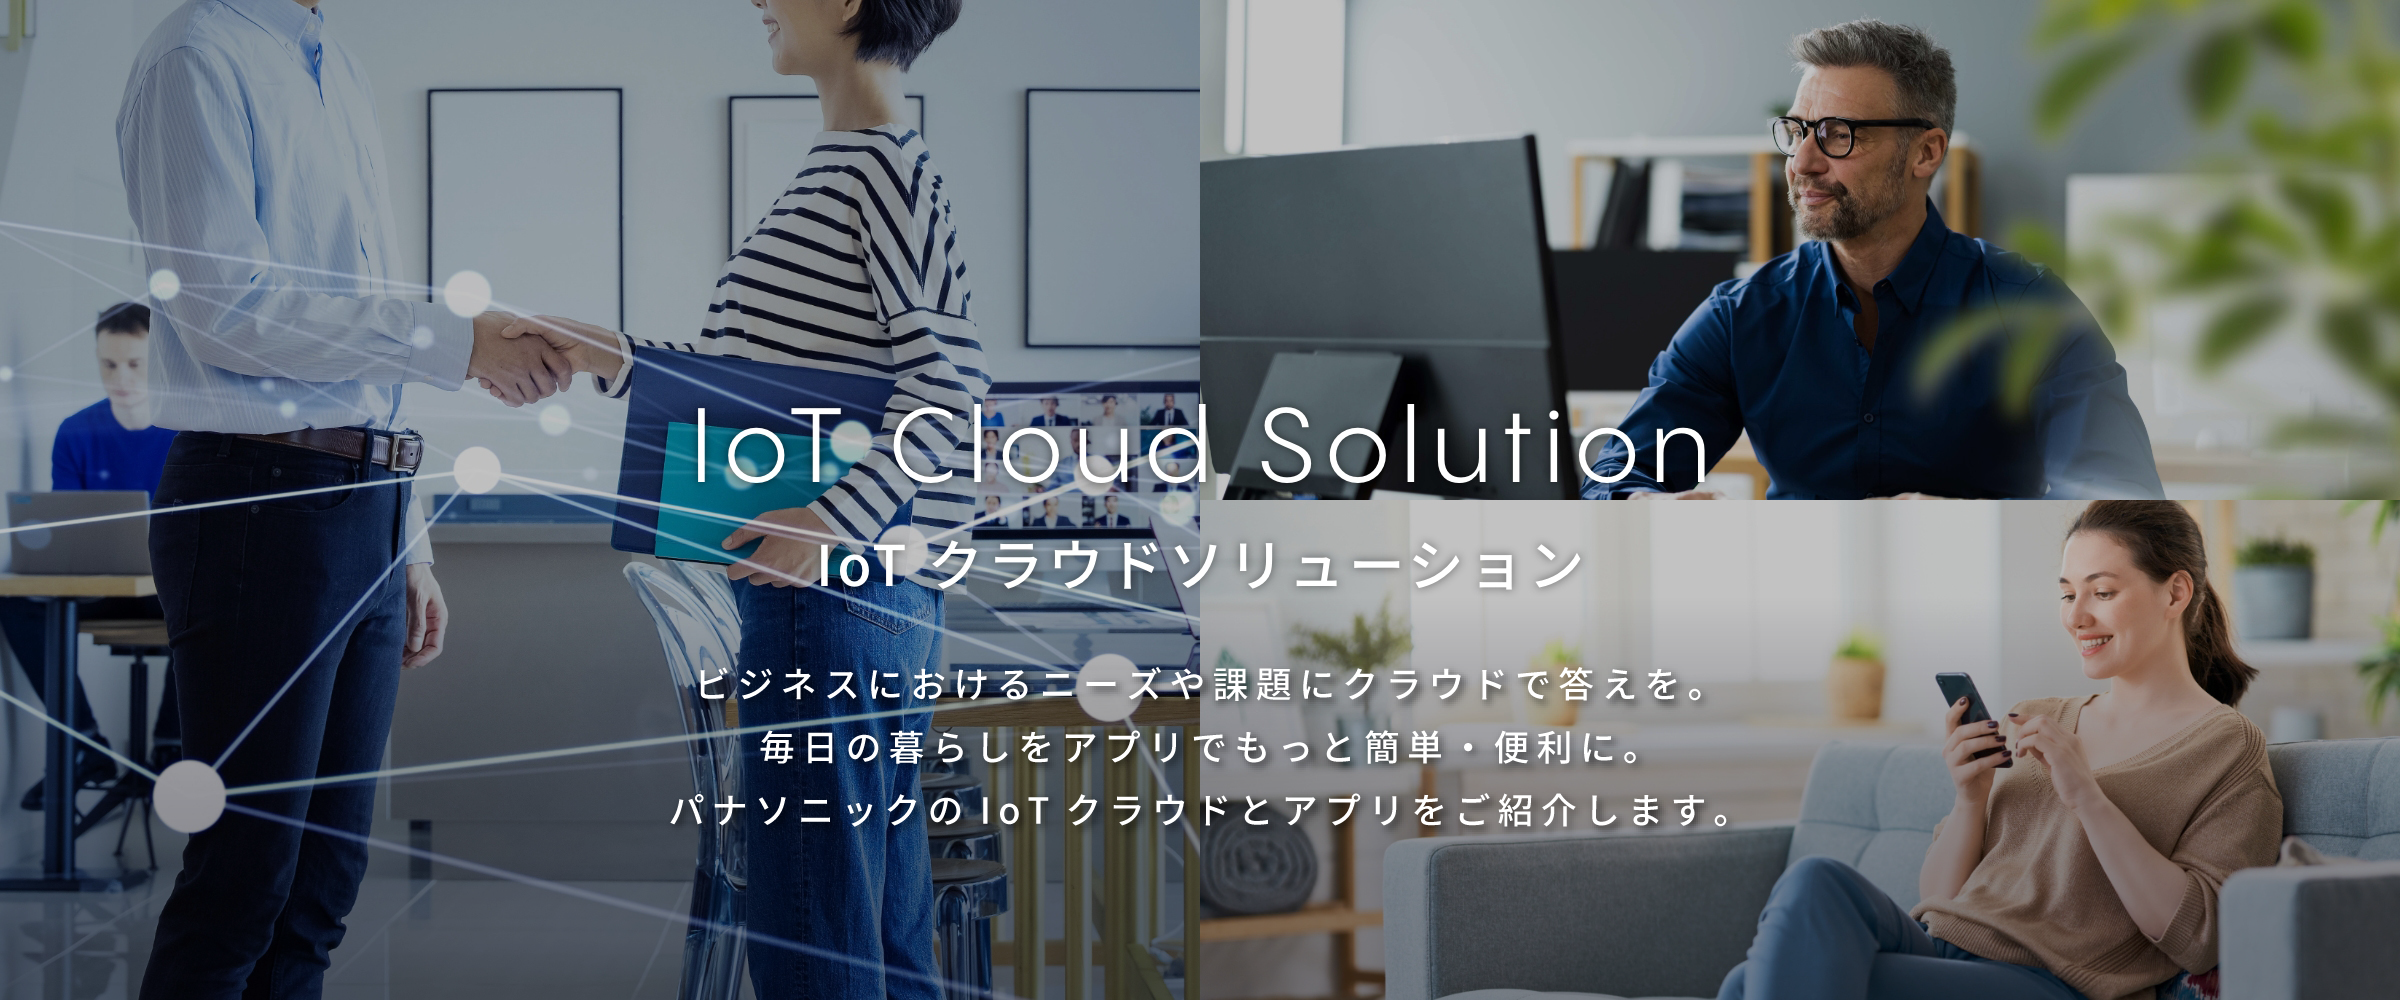 IoT Cloud Solution IoT クラウドソリューション ビジネスにおけるニーズや課題にクラウドで答えを。毎日の暮らしをアプリでもっと簡単・便利に。パナソニックのIoTクラウドとアプリをご紹介します。